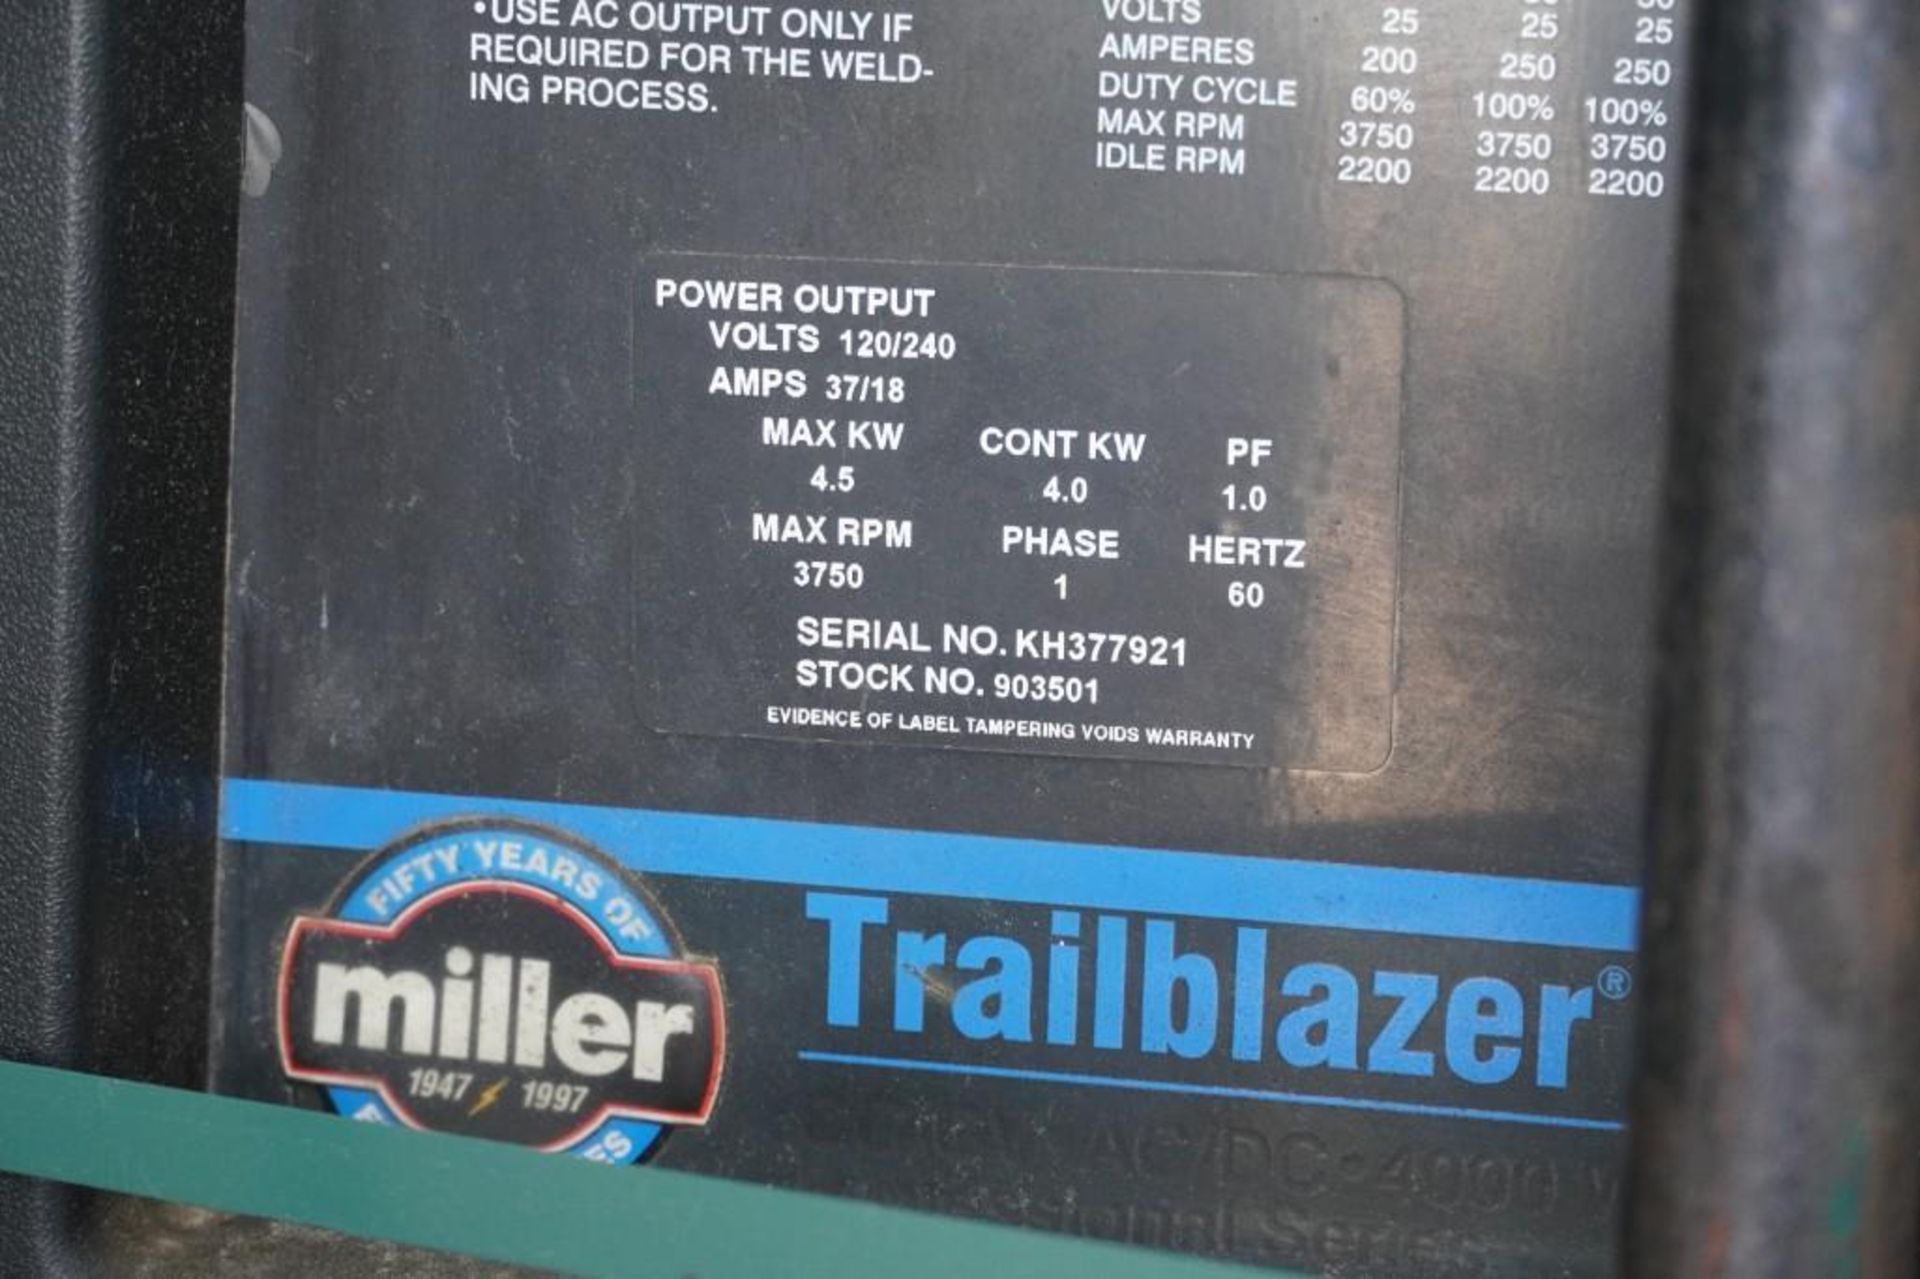 Miller Trail Blazer 251 Engine Drive Welder - Image 12 of 18